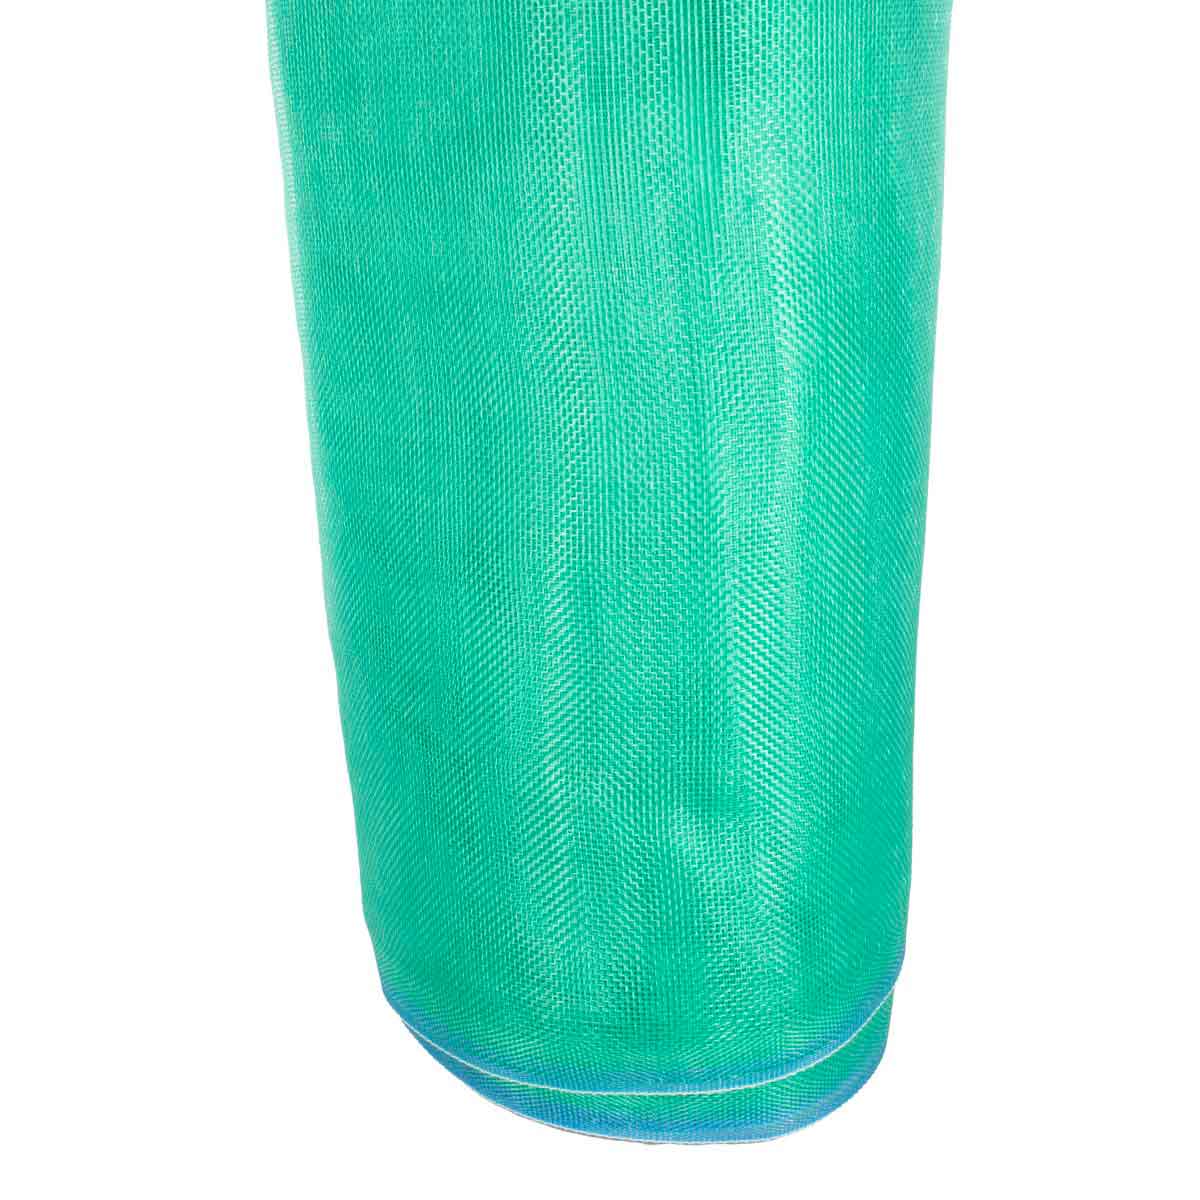 Tela Mosquitera De Plastico Verde 30 M x 105 cm Cal 12 Leon - Ferreabasto